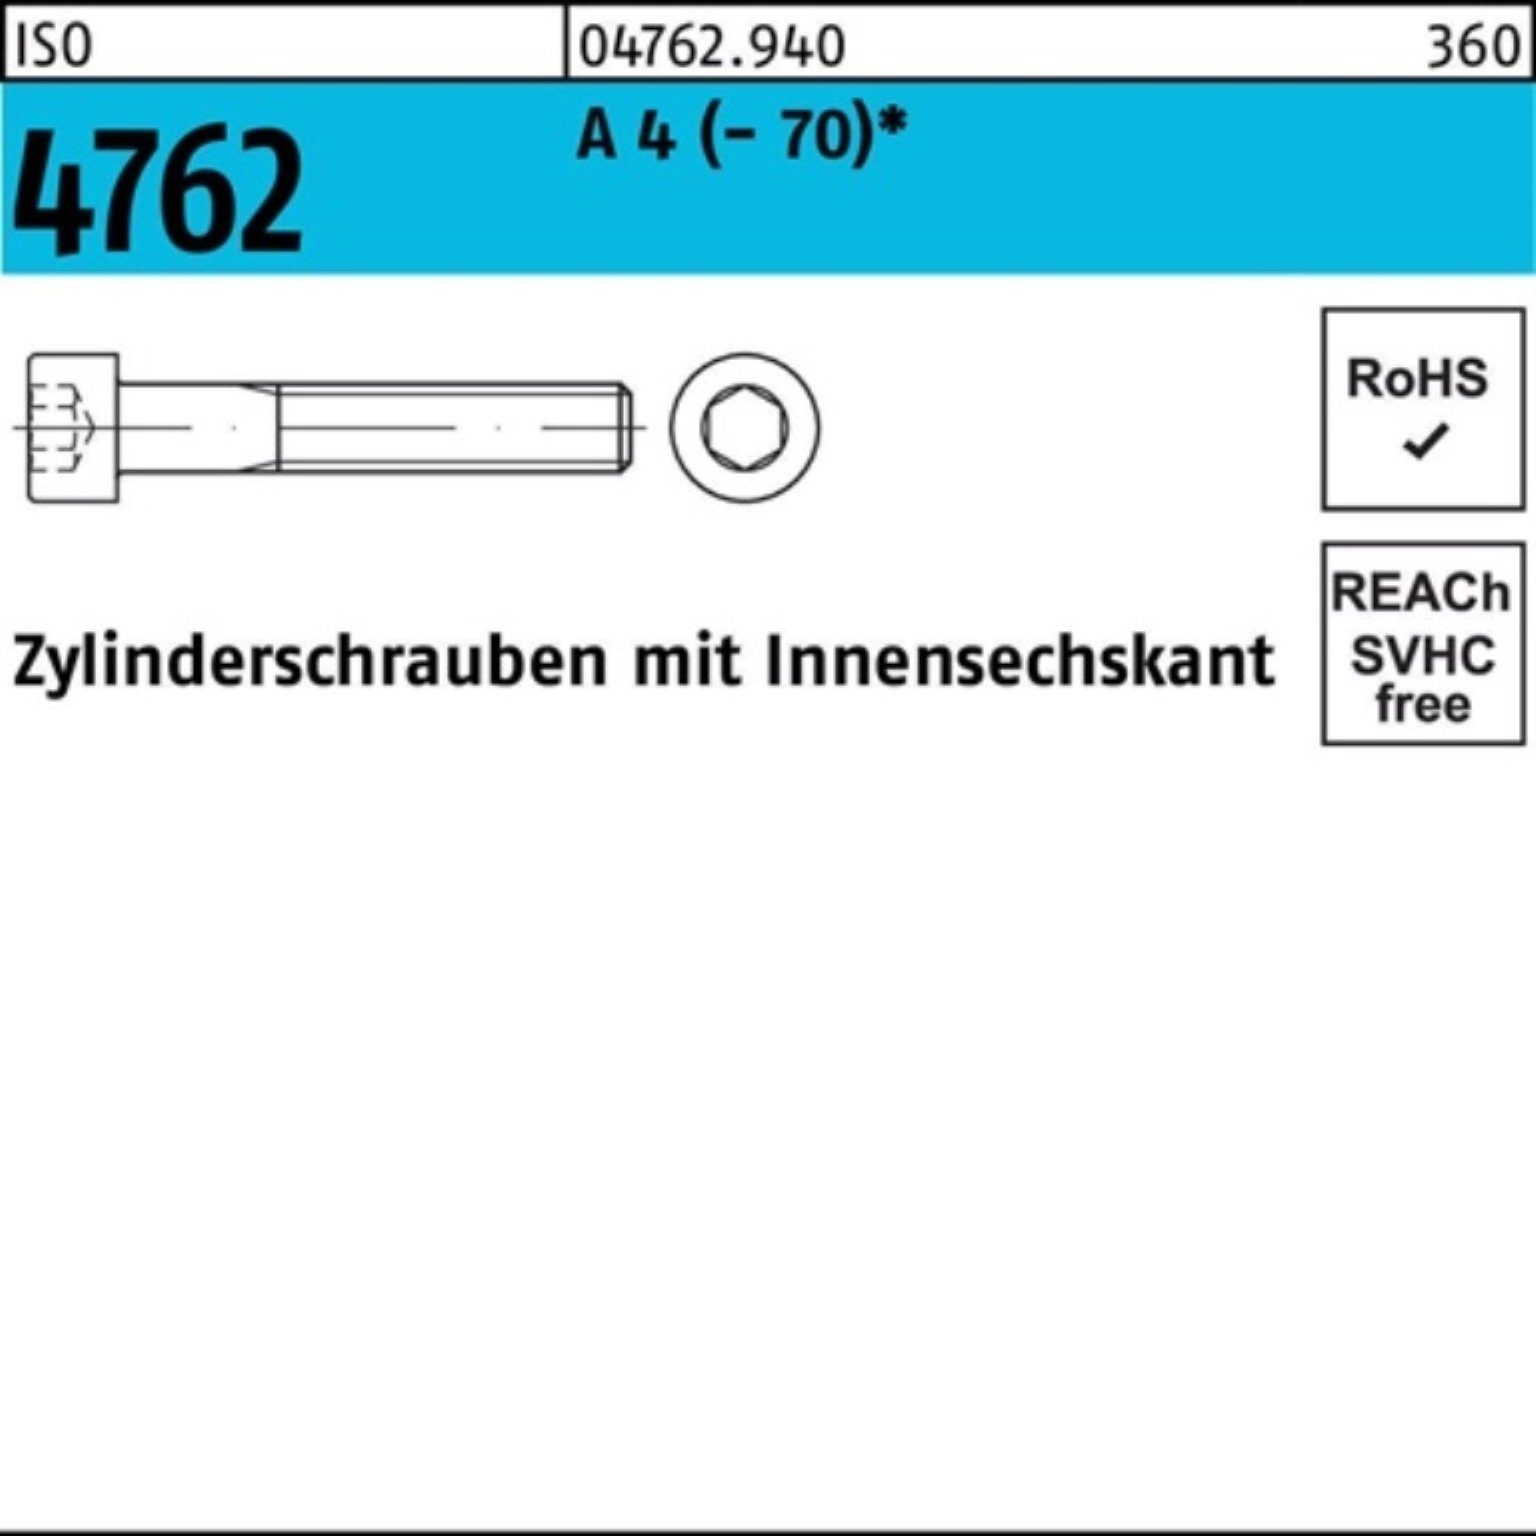 Innen-6kt M30x ISO Stück 1 4762 100er A Pack Zylinderschraube Zylinderschraube Reyher IS 90 4